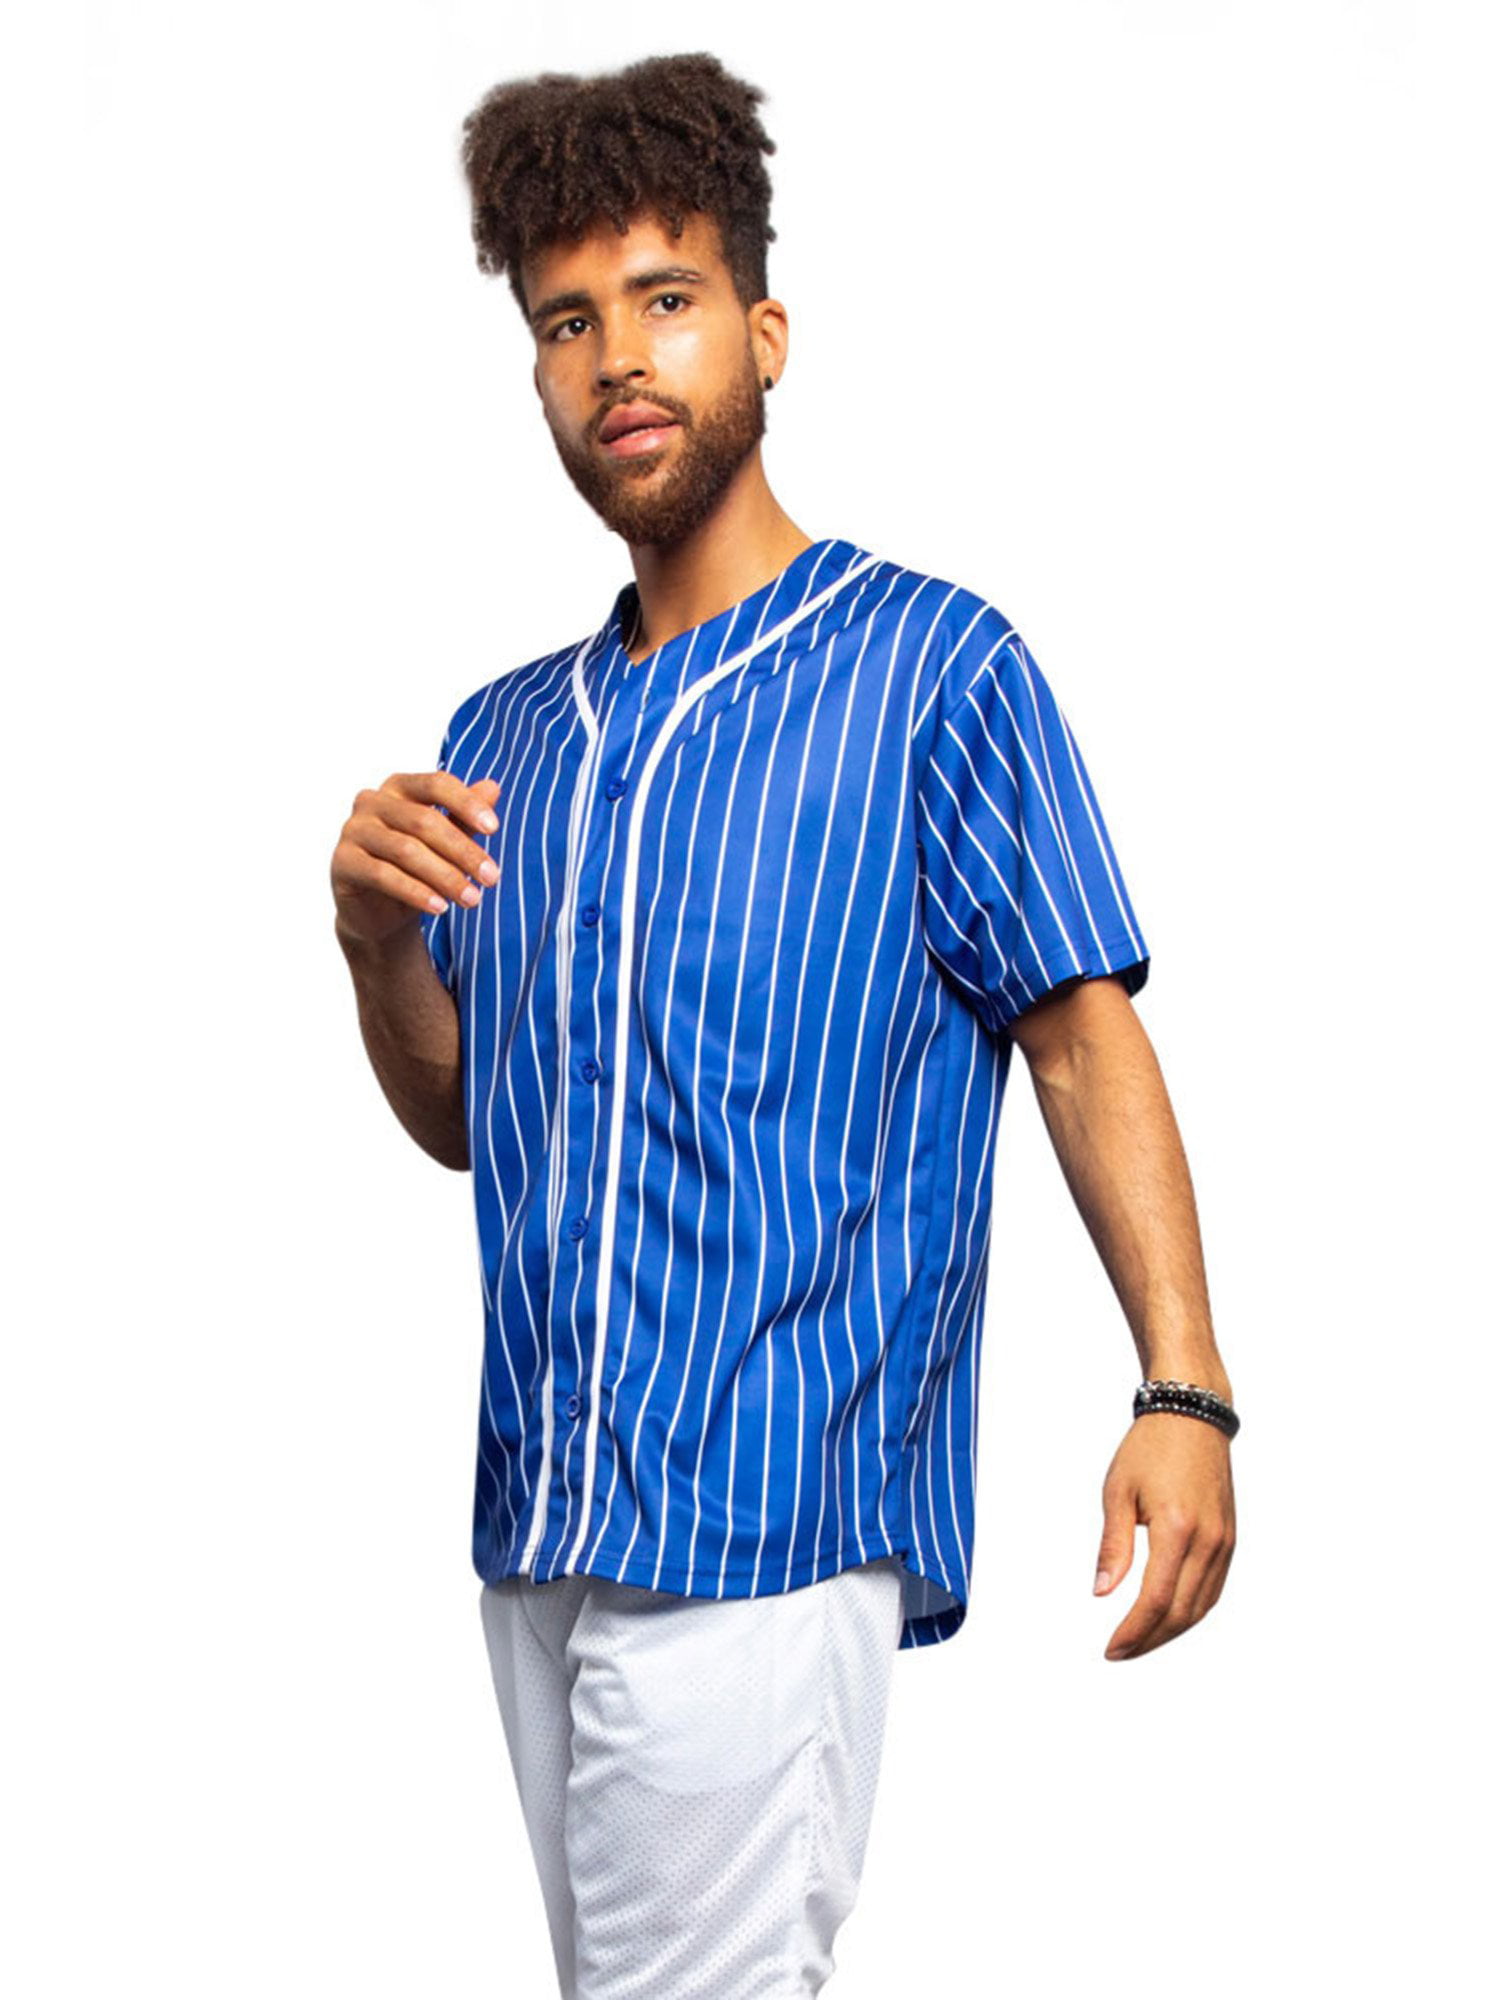 MNMN Blank Jersey Plain Hipster Hip Hop for Men Button-Down Baseball Jersey Short Sleeve Shirt Pink Stripes S-3XL 